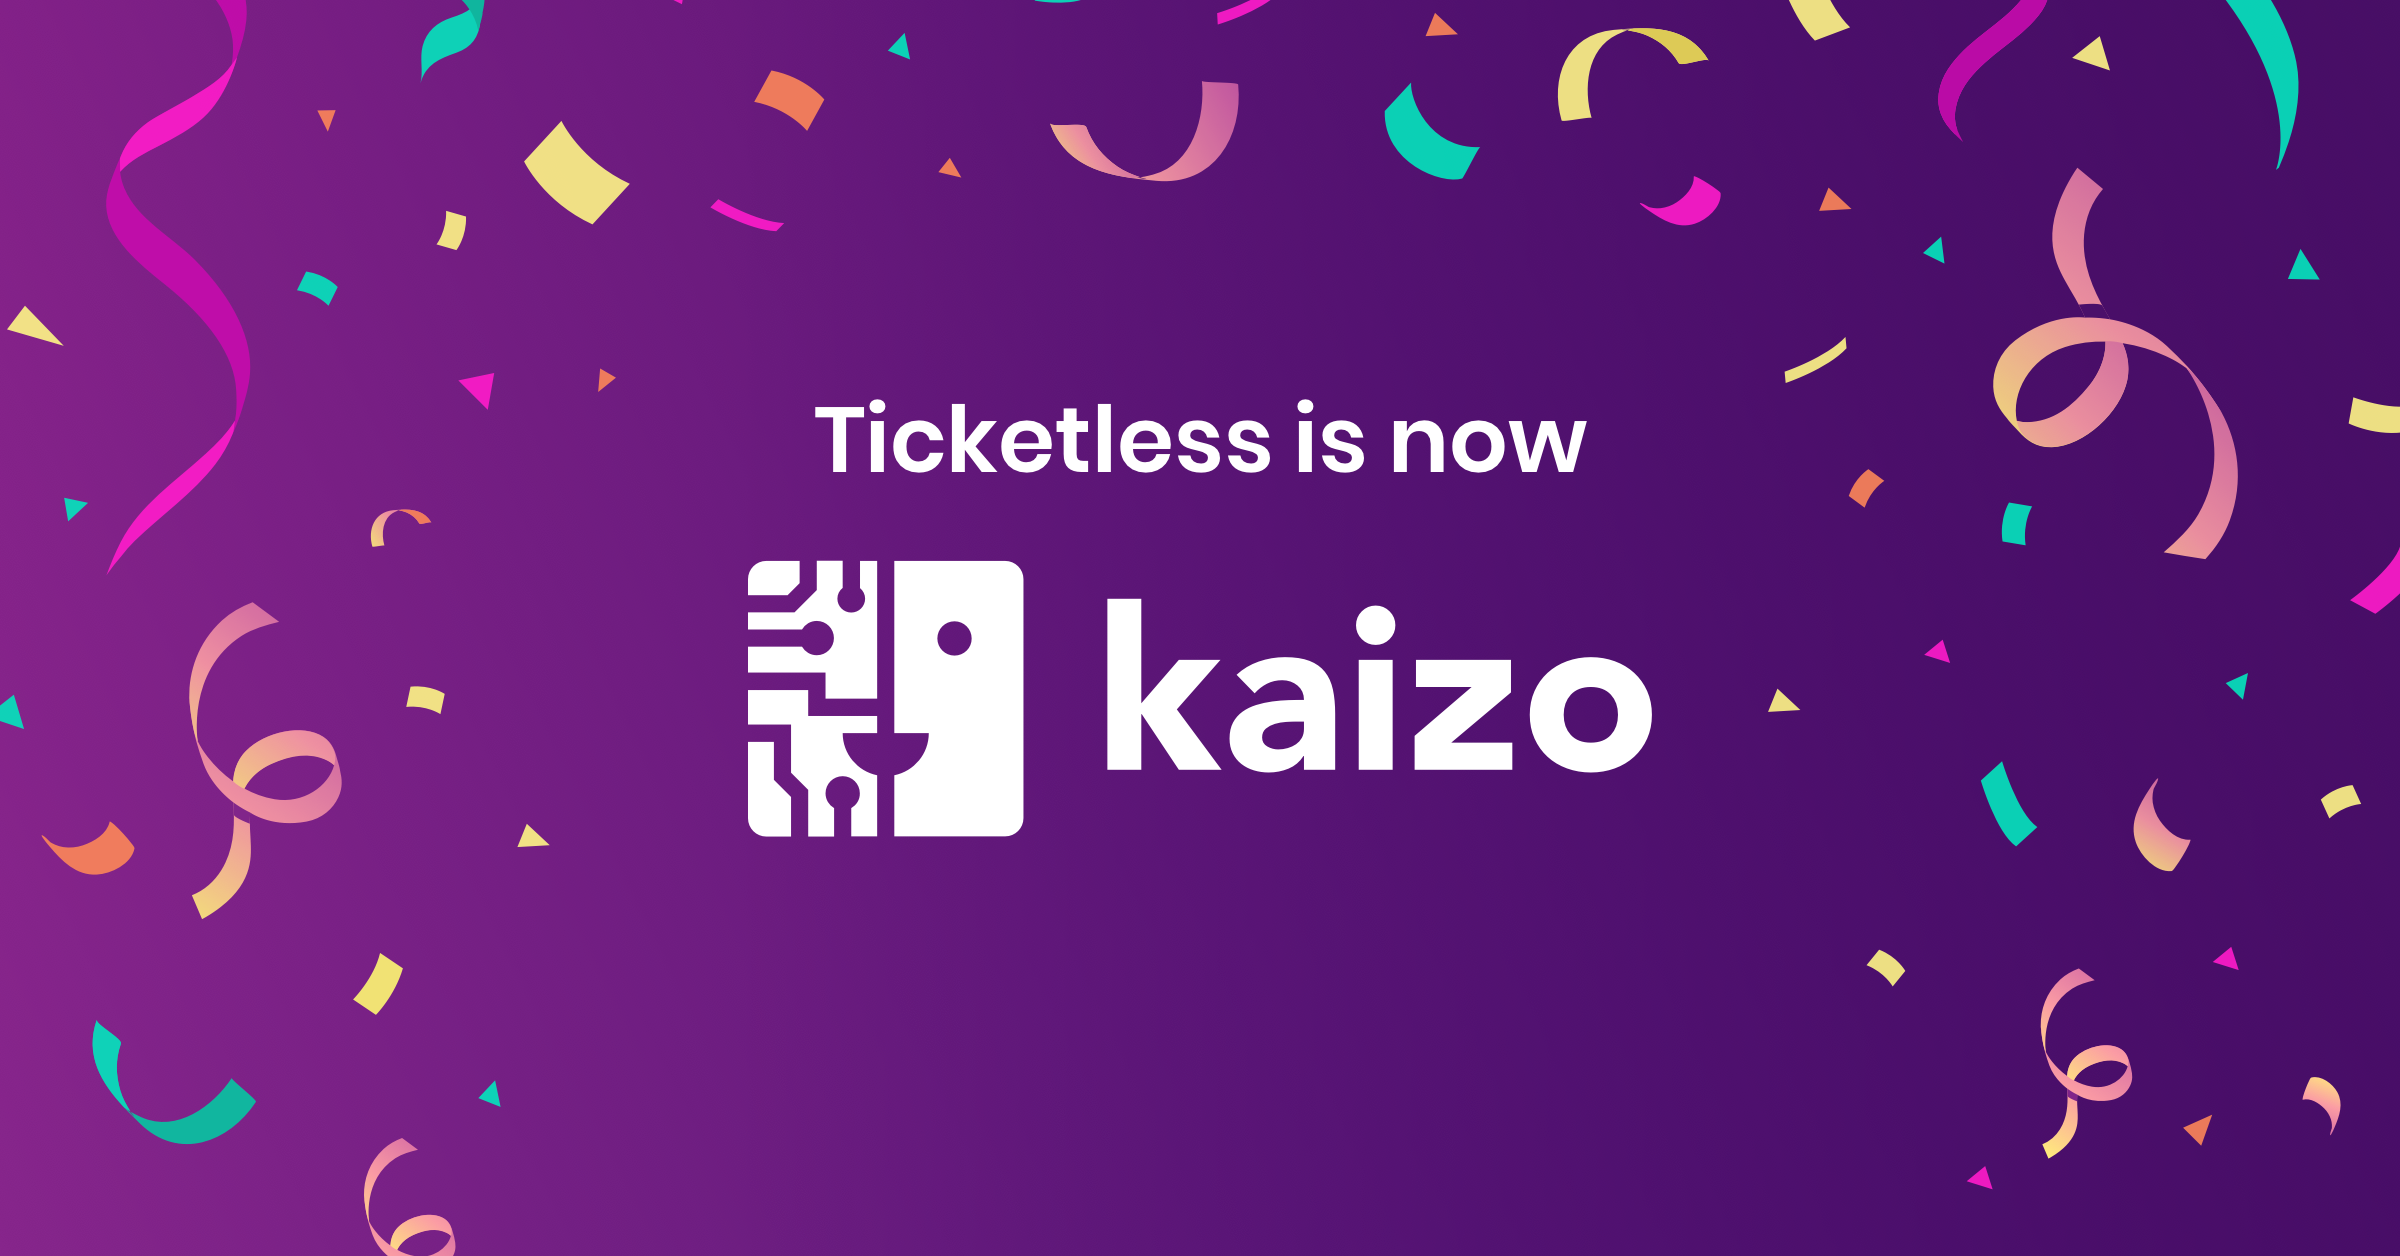 Ticketless is now Kaizo